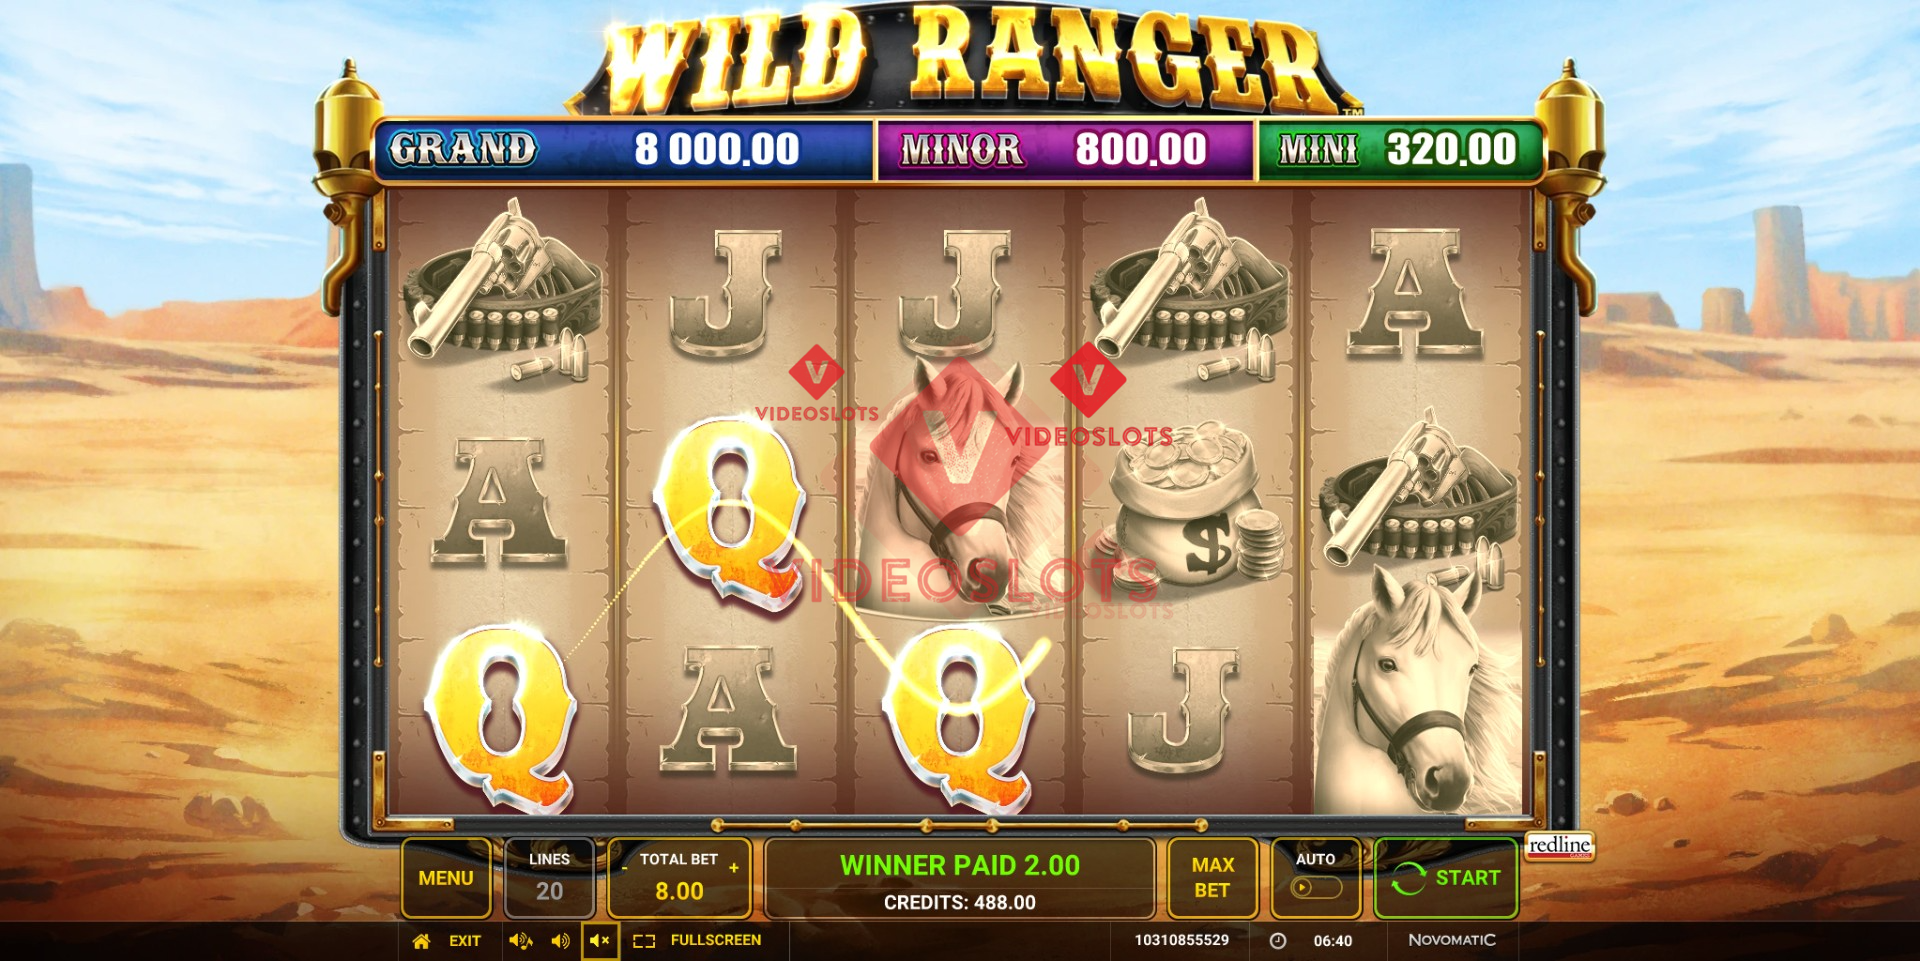 Base Game for Wild Ranger slot from Greentube